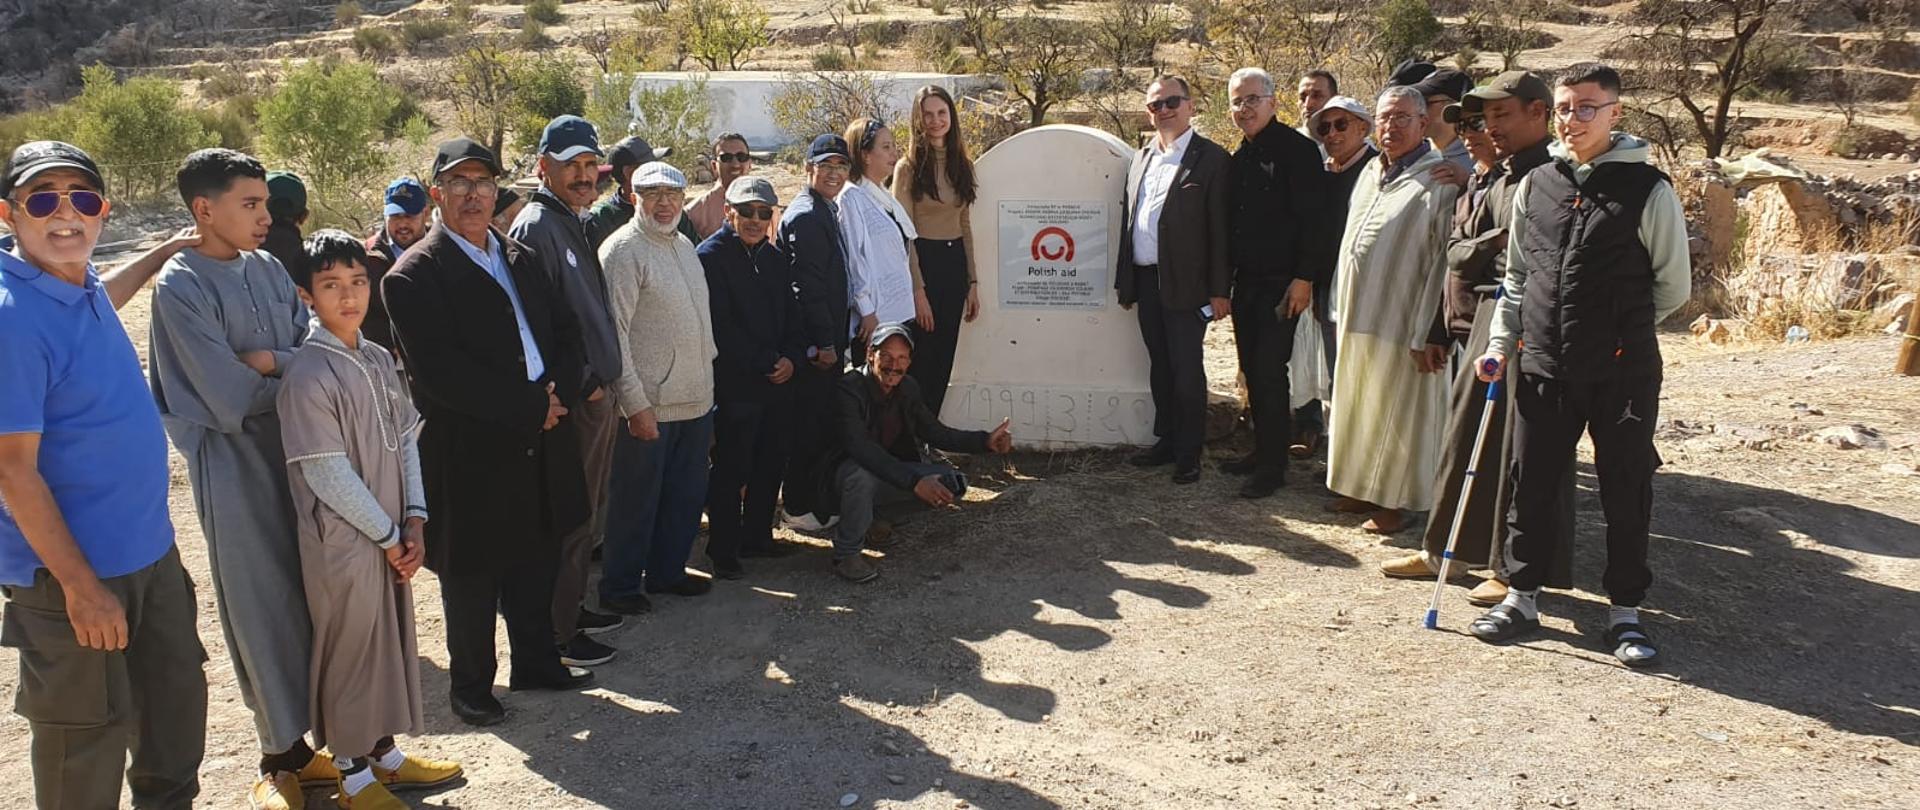 projekt rozwojowy polska pomoc we wsi Doudad, Souss Massa, Maroko